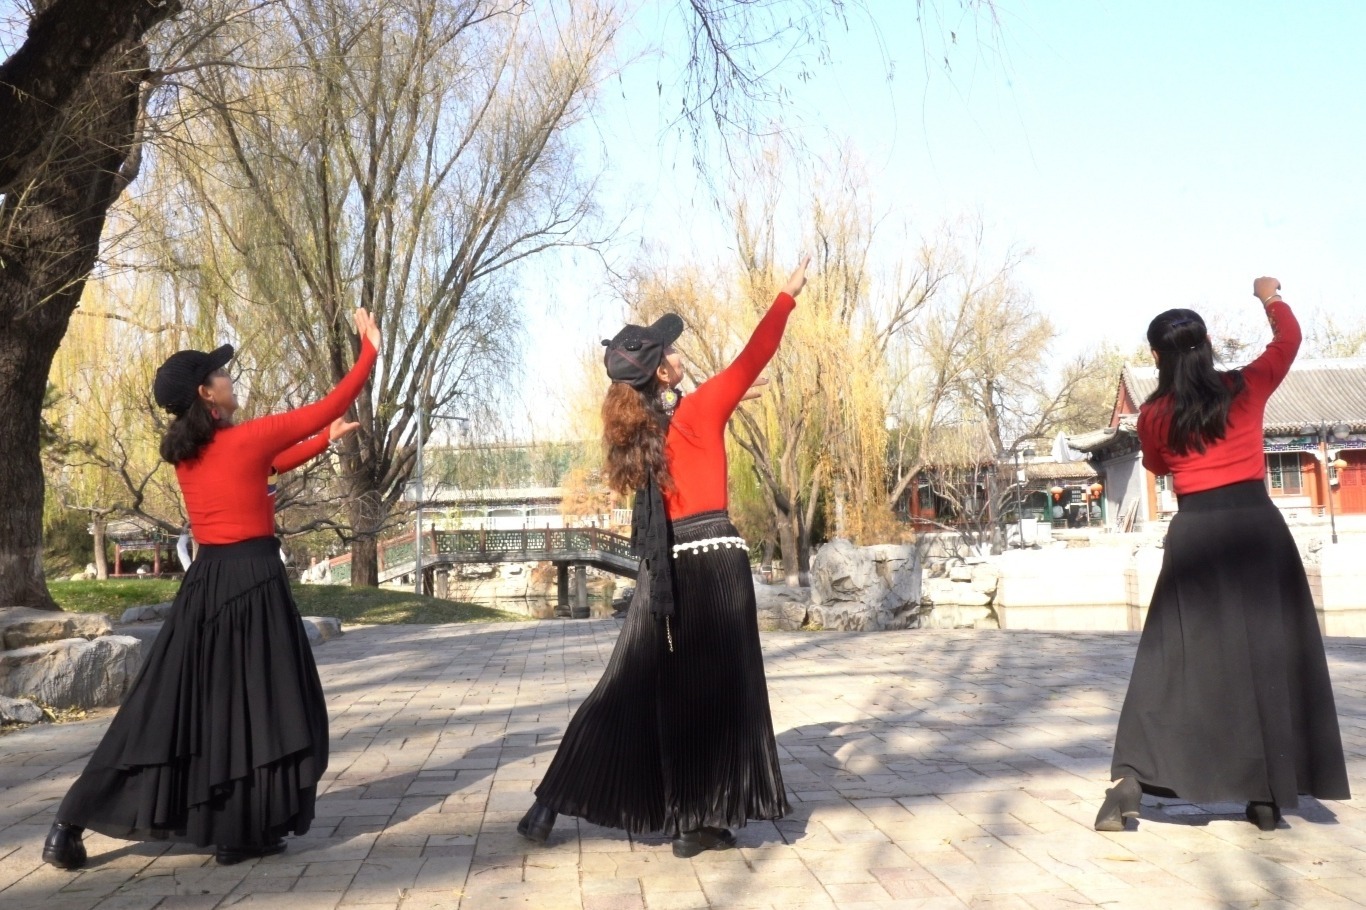 蒙古族舞蹈——顶碗舞-中关村在线摄影论坛